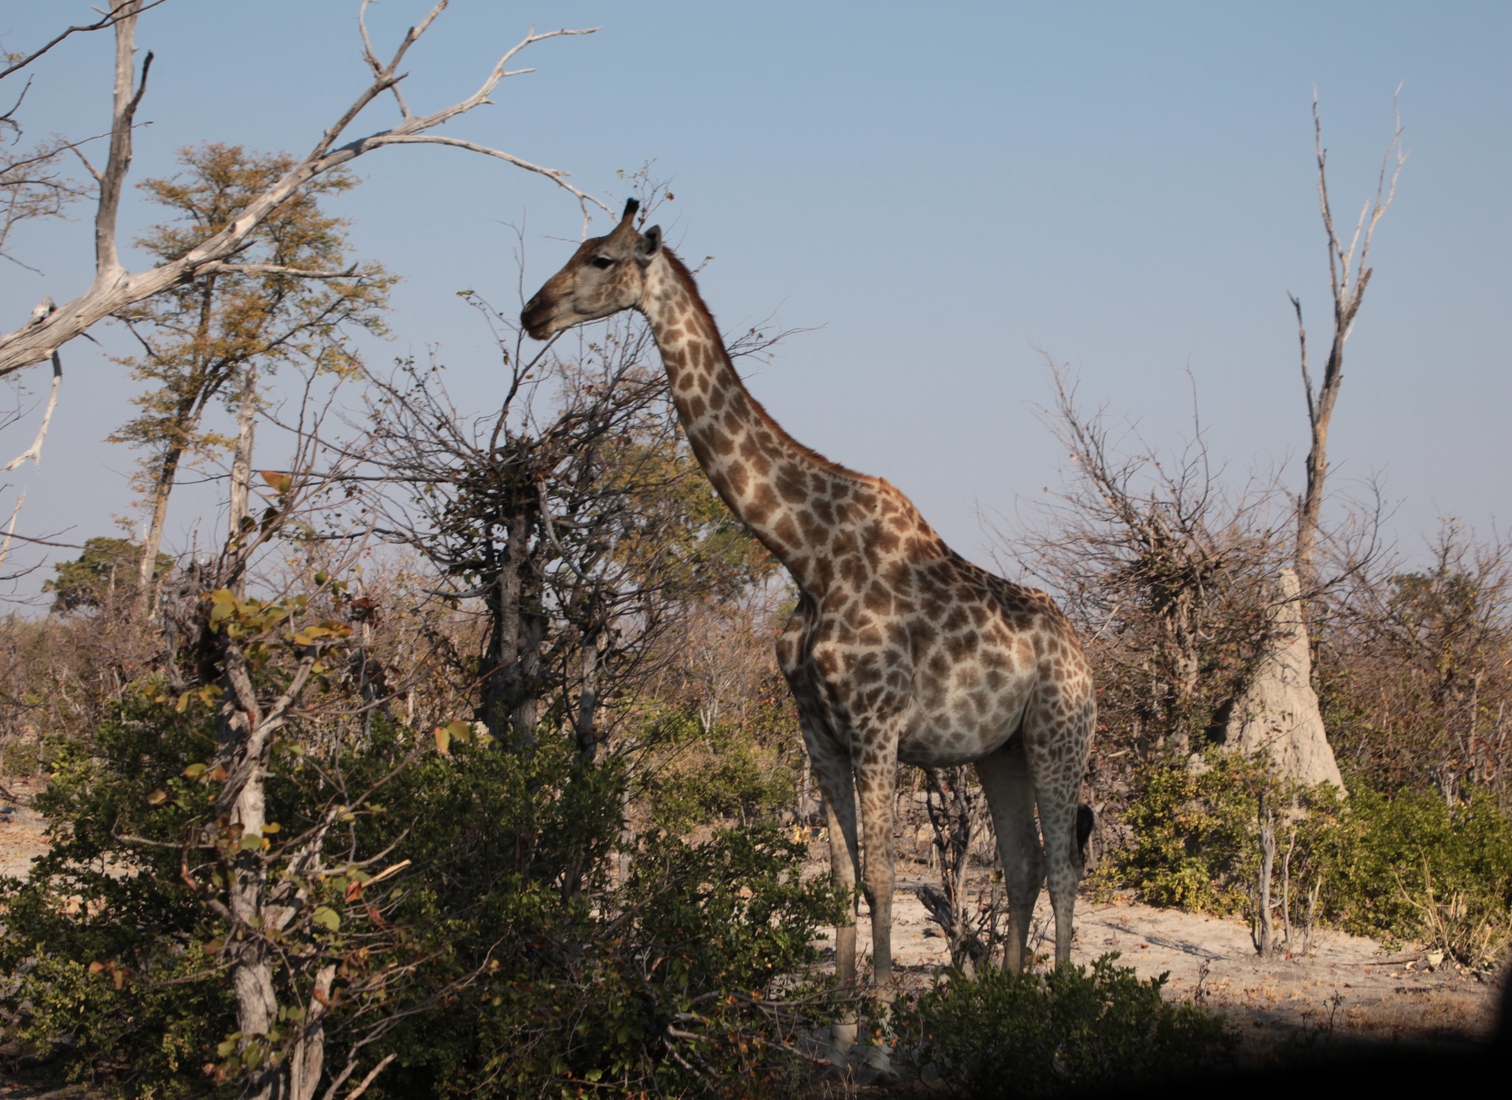 Moremi: Noordelijke giraffe (Giraffa Camelopardalis)